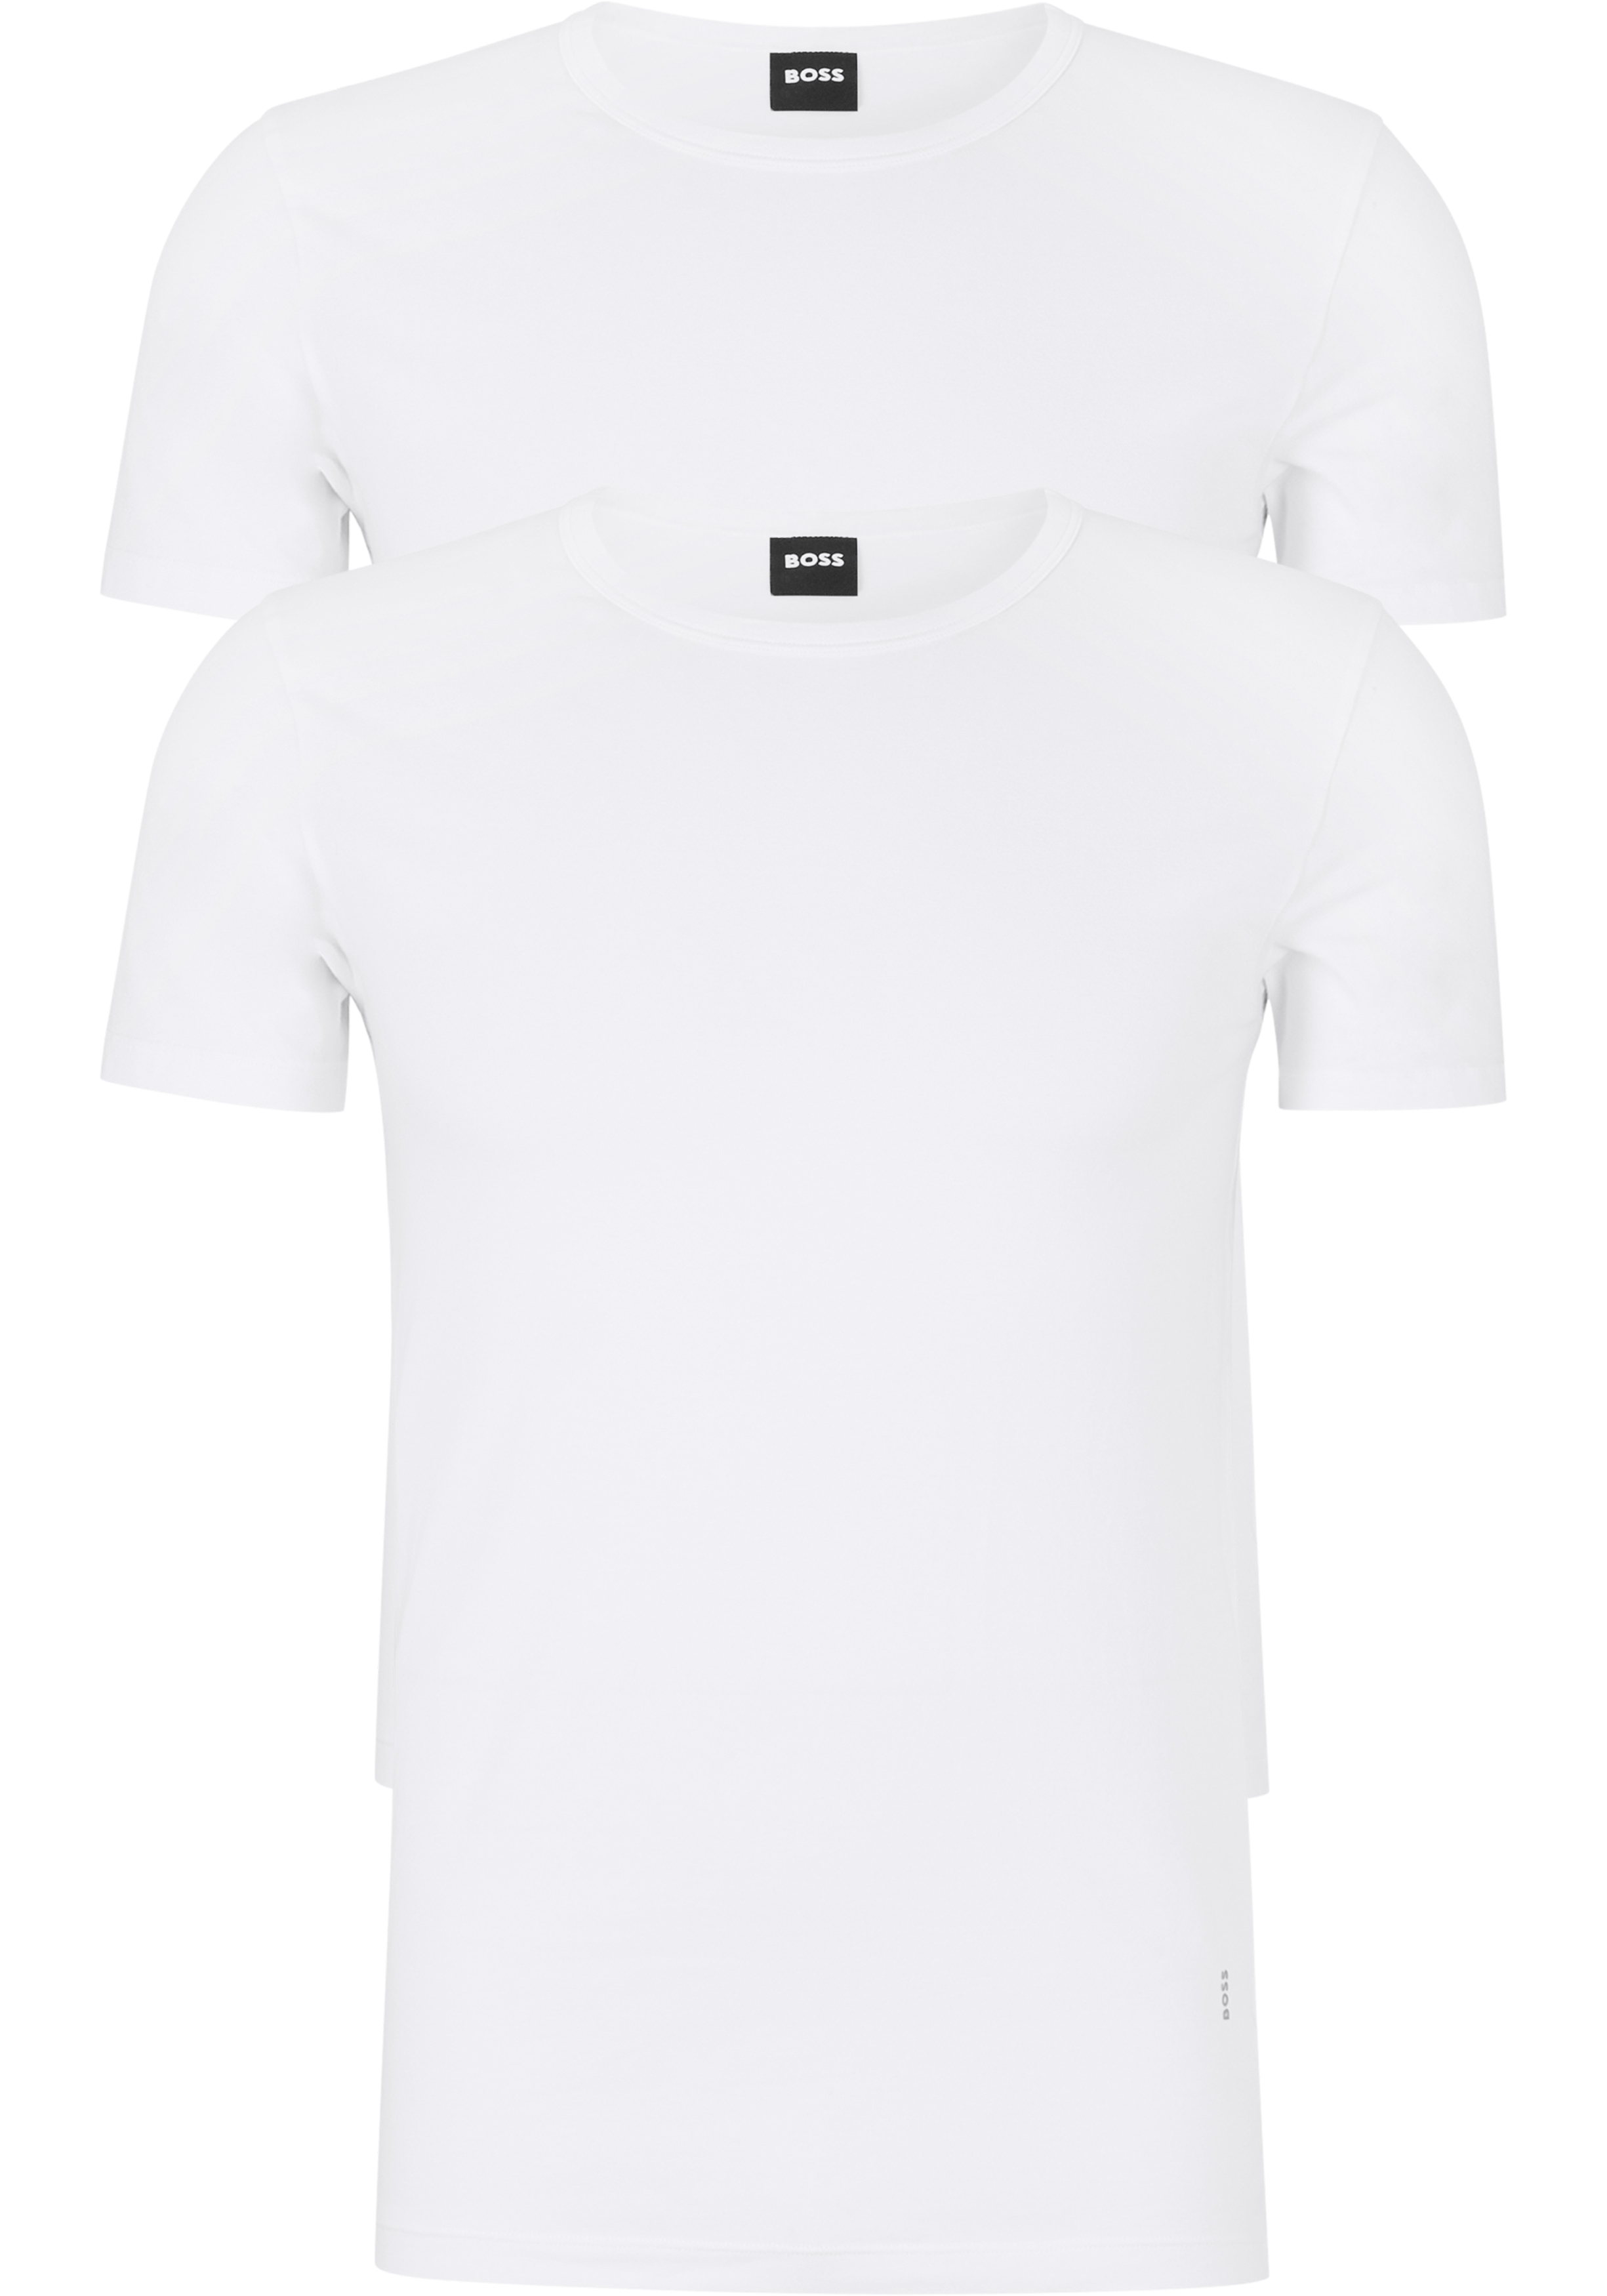 Soedan Ruwe olie Schaken HUGO BOSS Modern stretch T-shirts slim fit (2-pack), heren T-shirts... -  Shop de nieuwste voorjaarsmode